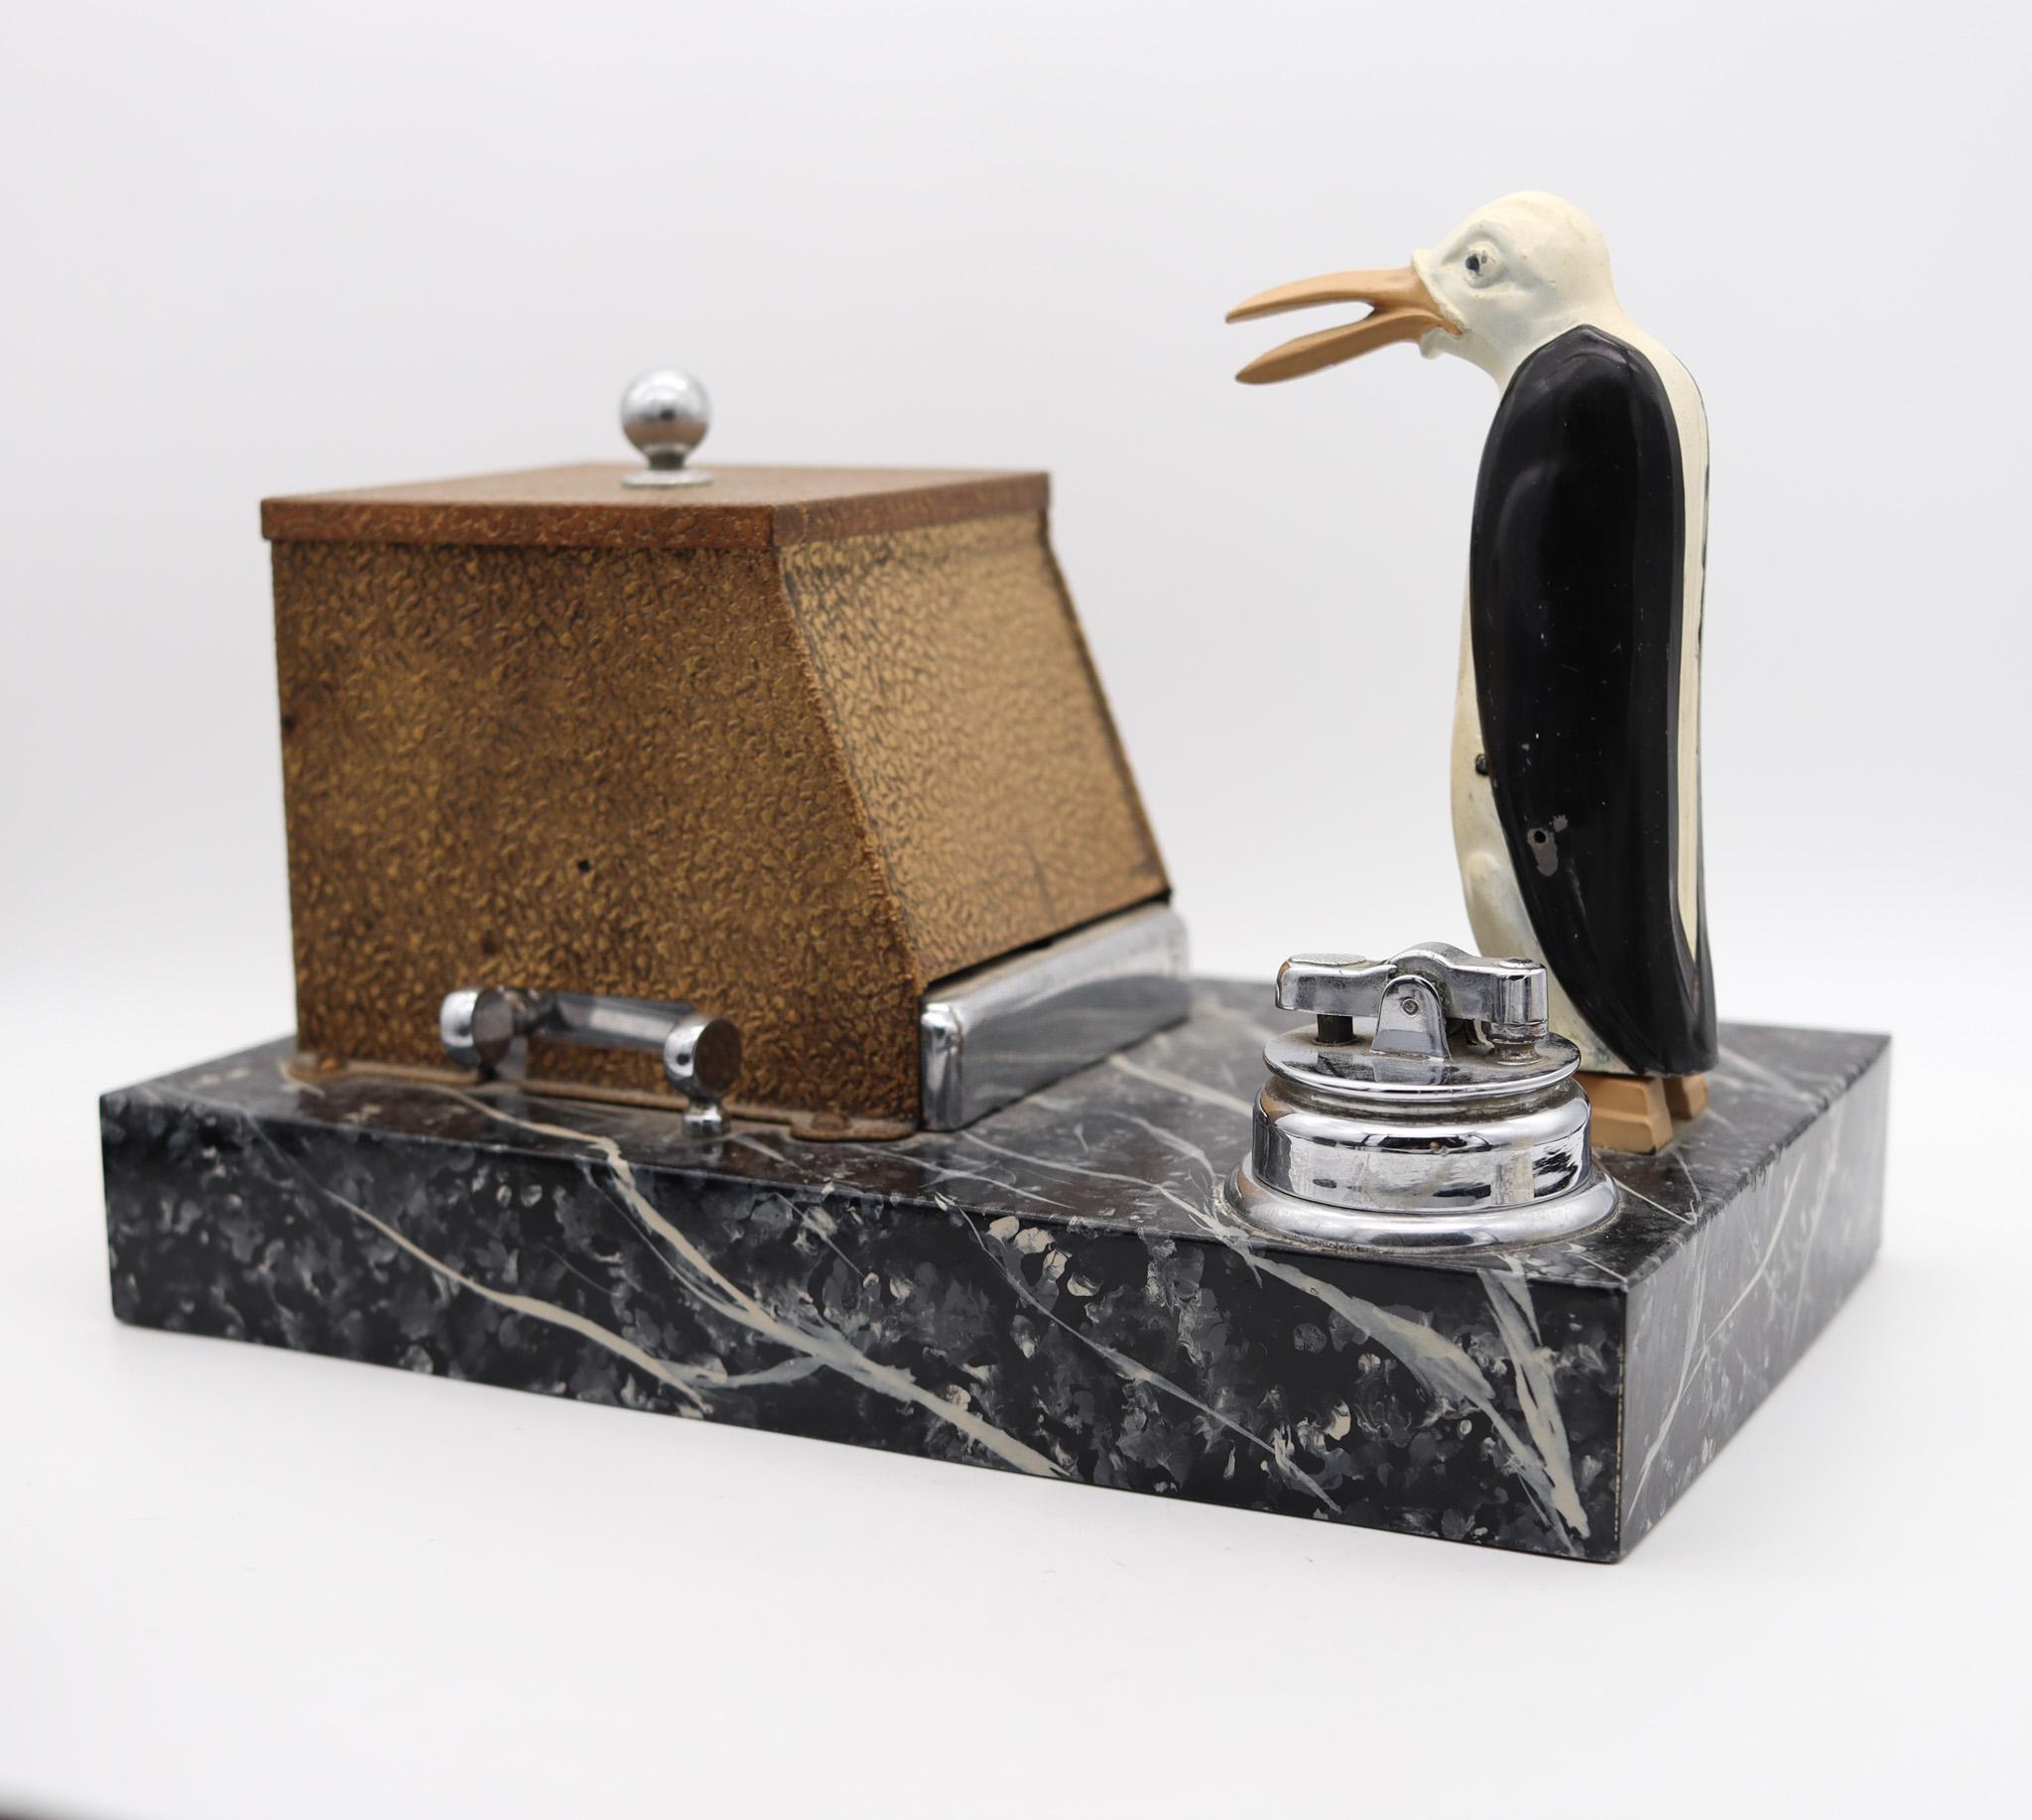 Boîte distributrice mécanique Art déco en forme de pingouin magique, conçue par Ronson.

Une belle, extrêmement rare et très décorative boîte de bureau à distributeur mécanique, créée dans la ville de Newark, New Jersey aux États-Unis par The Ronson